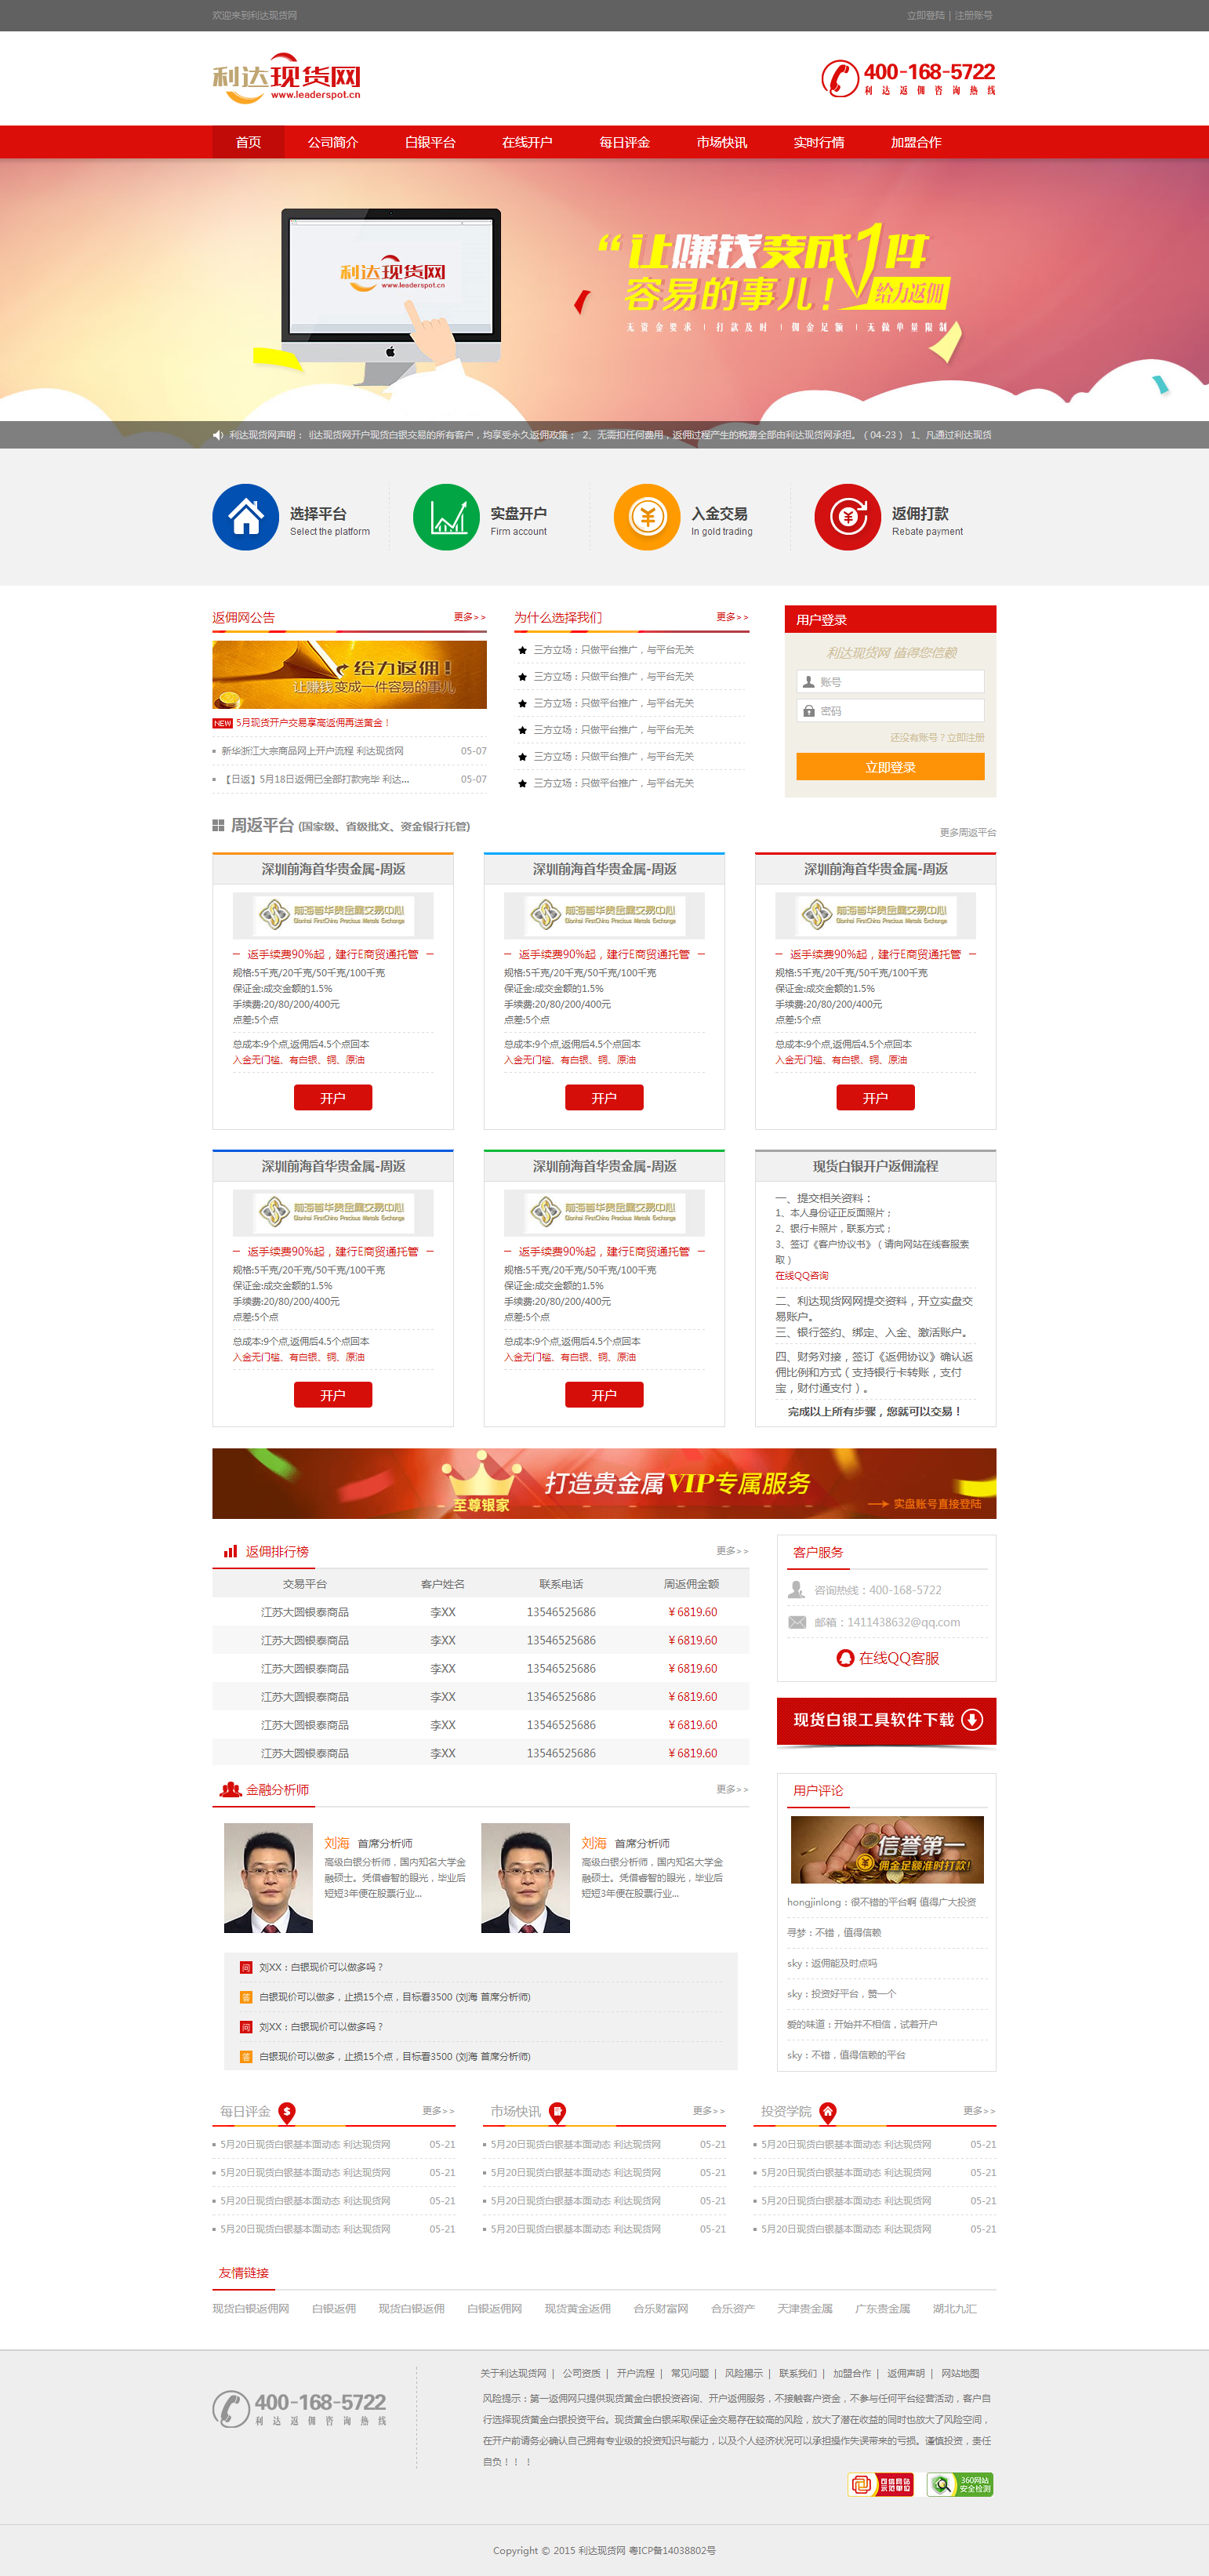 红色的利达现货交易金融网站html整站模板